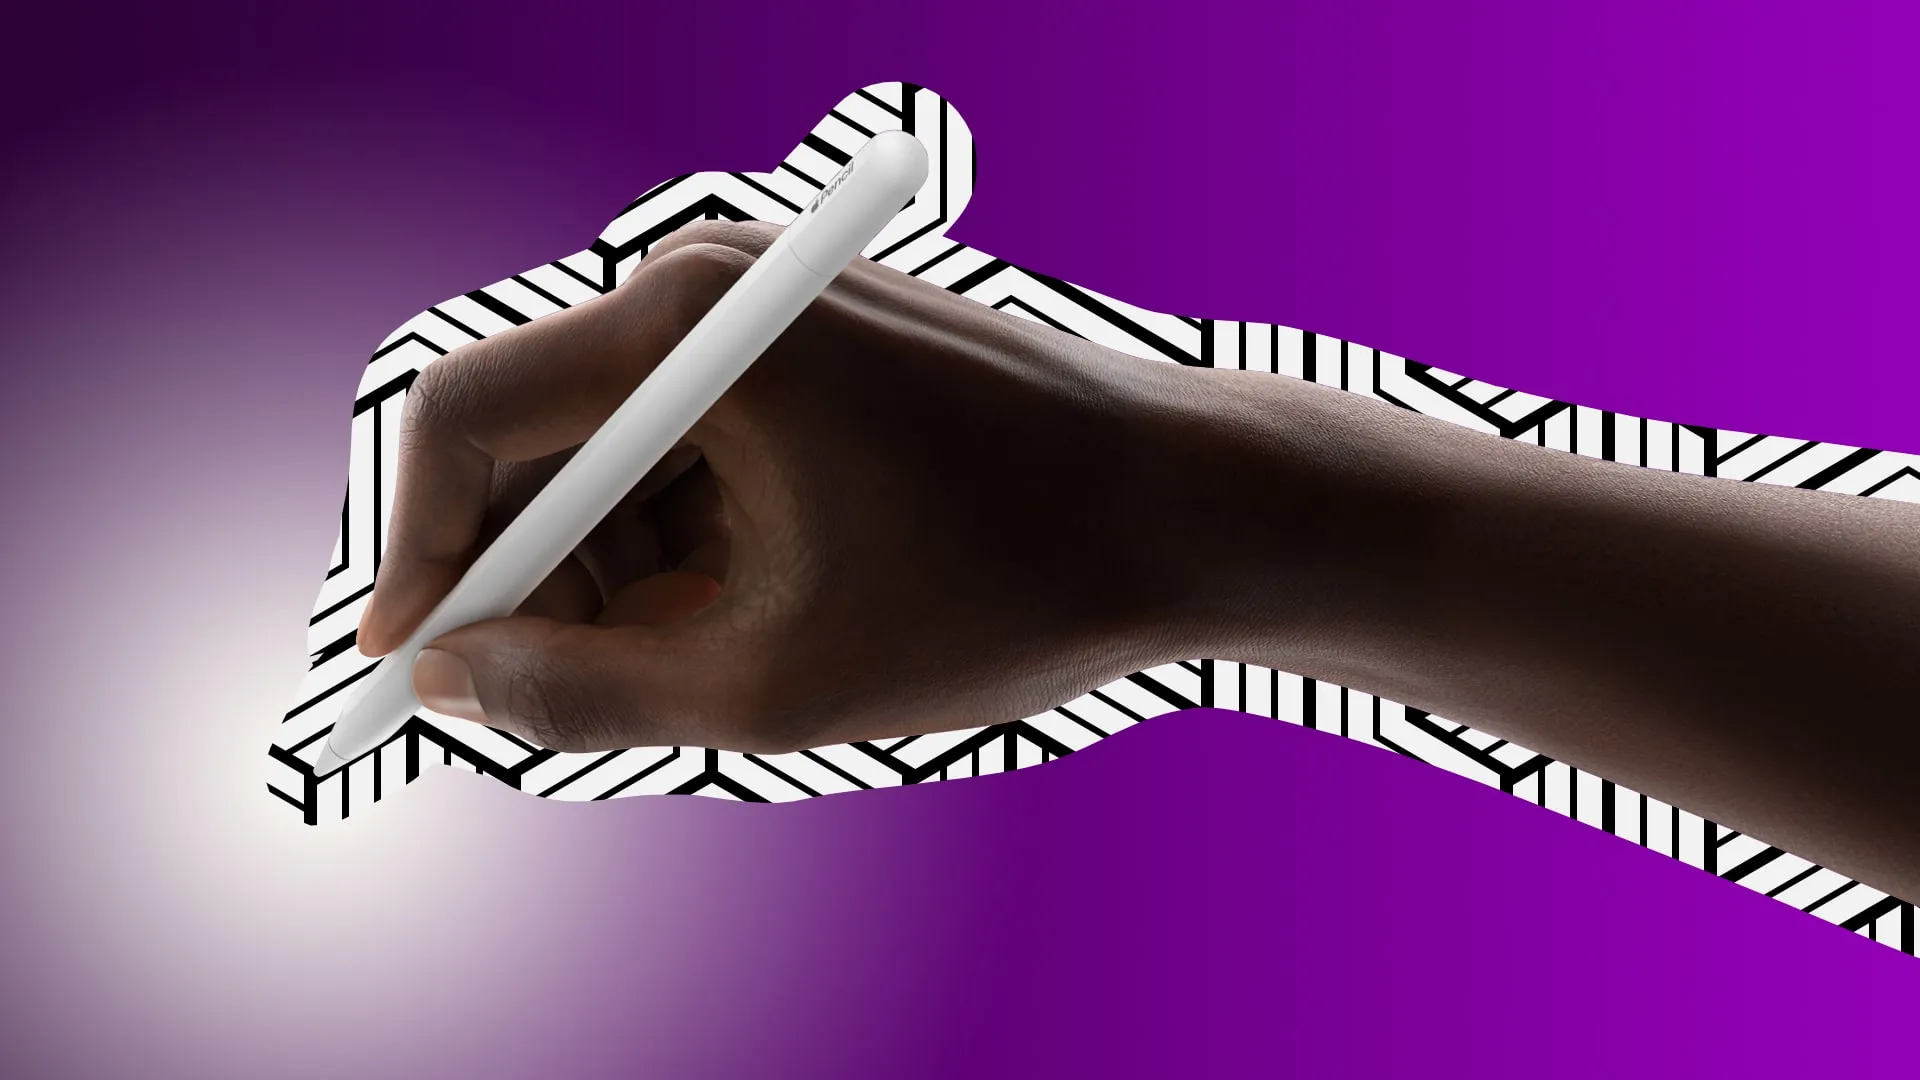 어두운 보라색 그라데이션 배경에 설정된 USB-C Apple Pencil을 들고 있는 남성 손